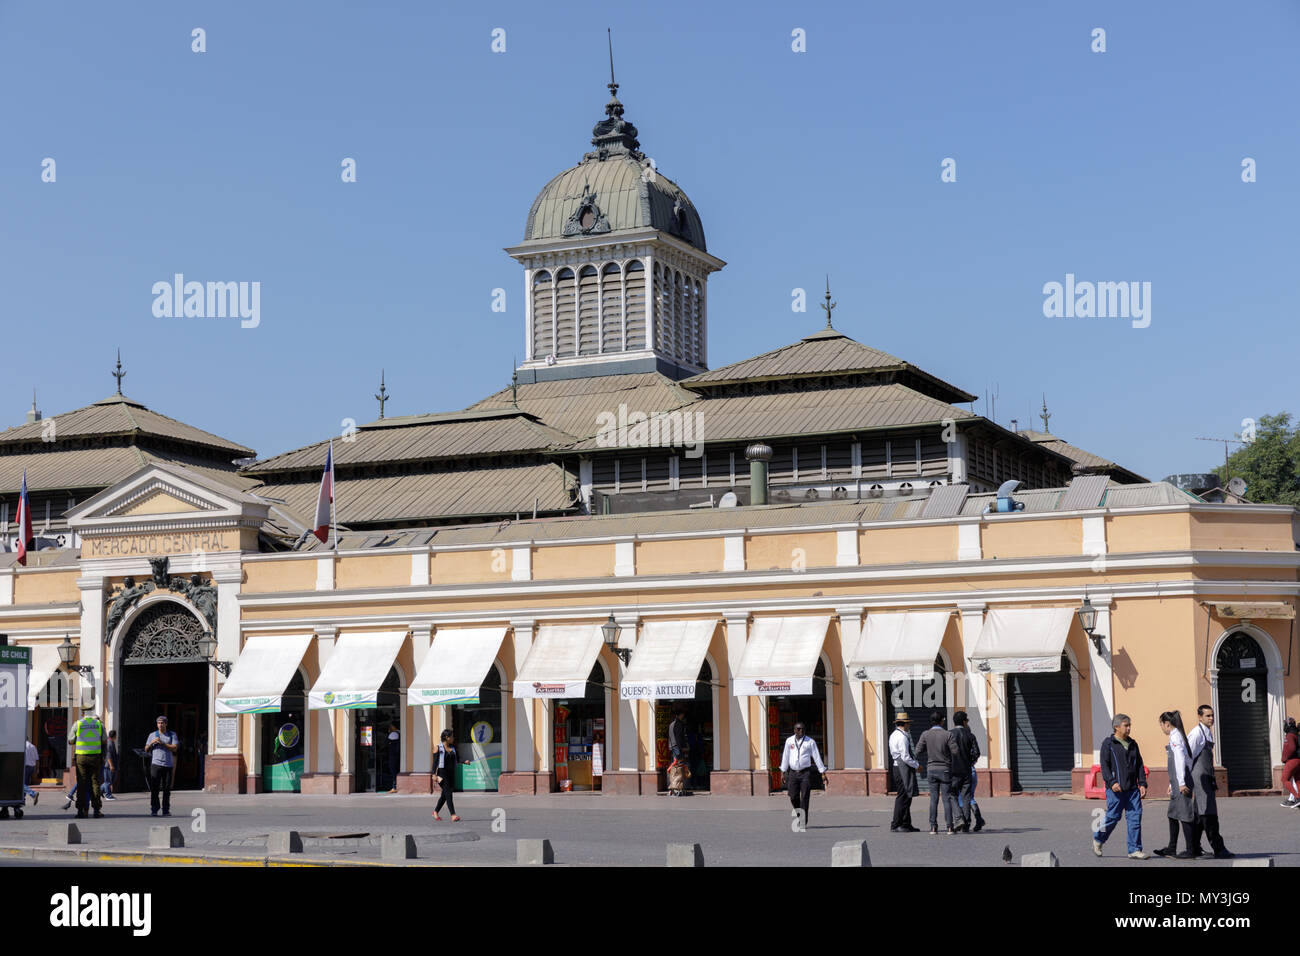 Santiago, Chile: Exterior of Central Market aka Mercado Central Stock Photo